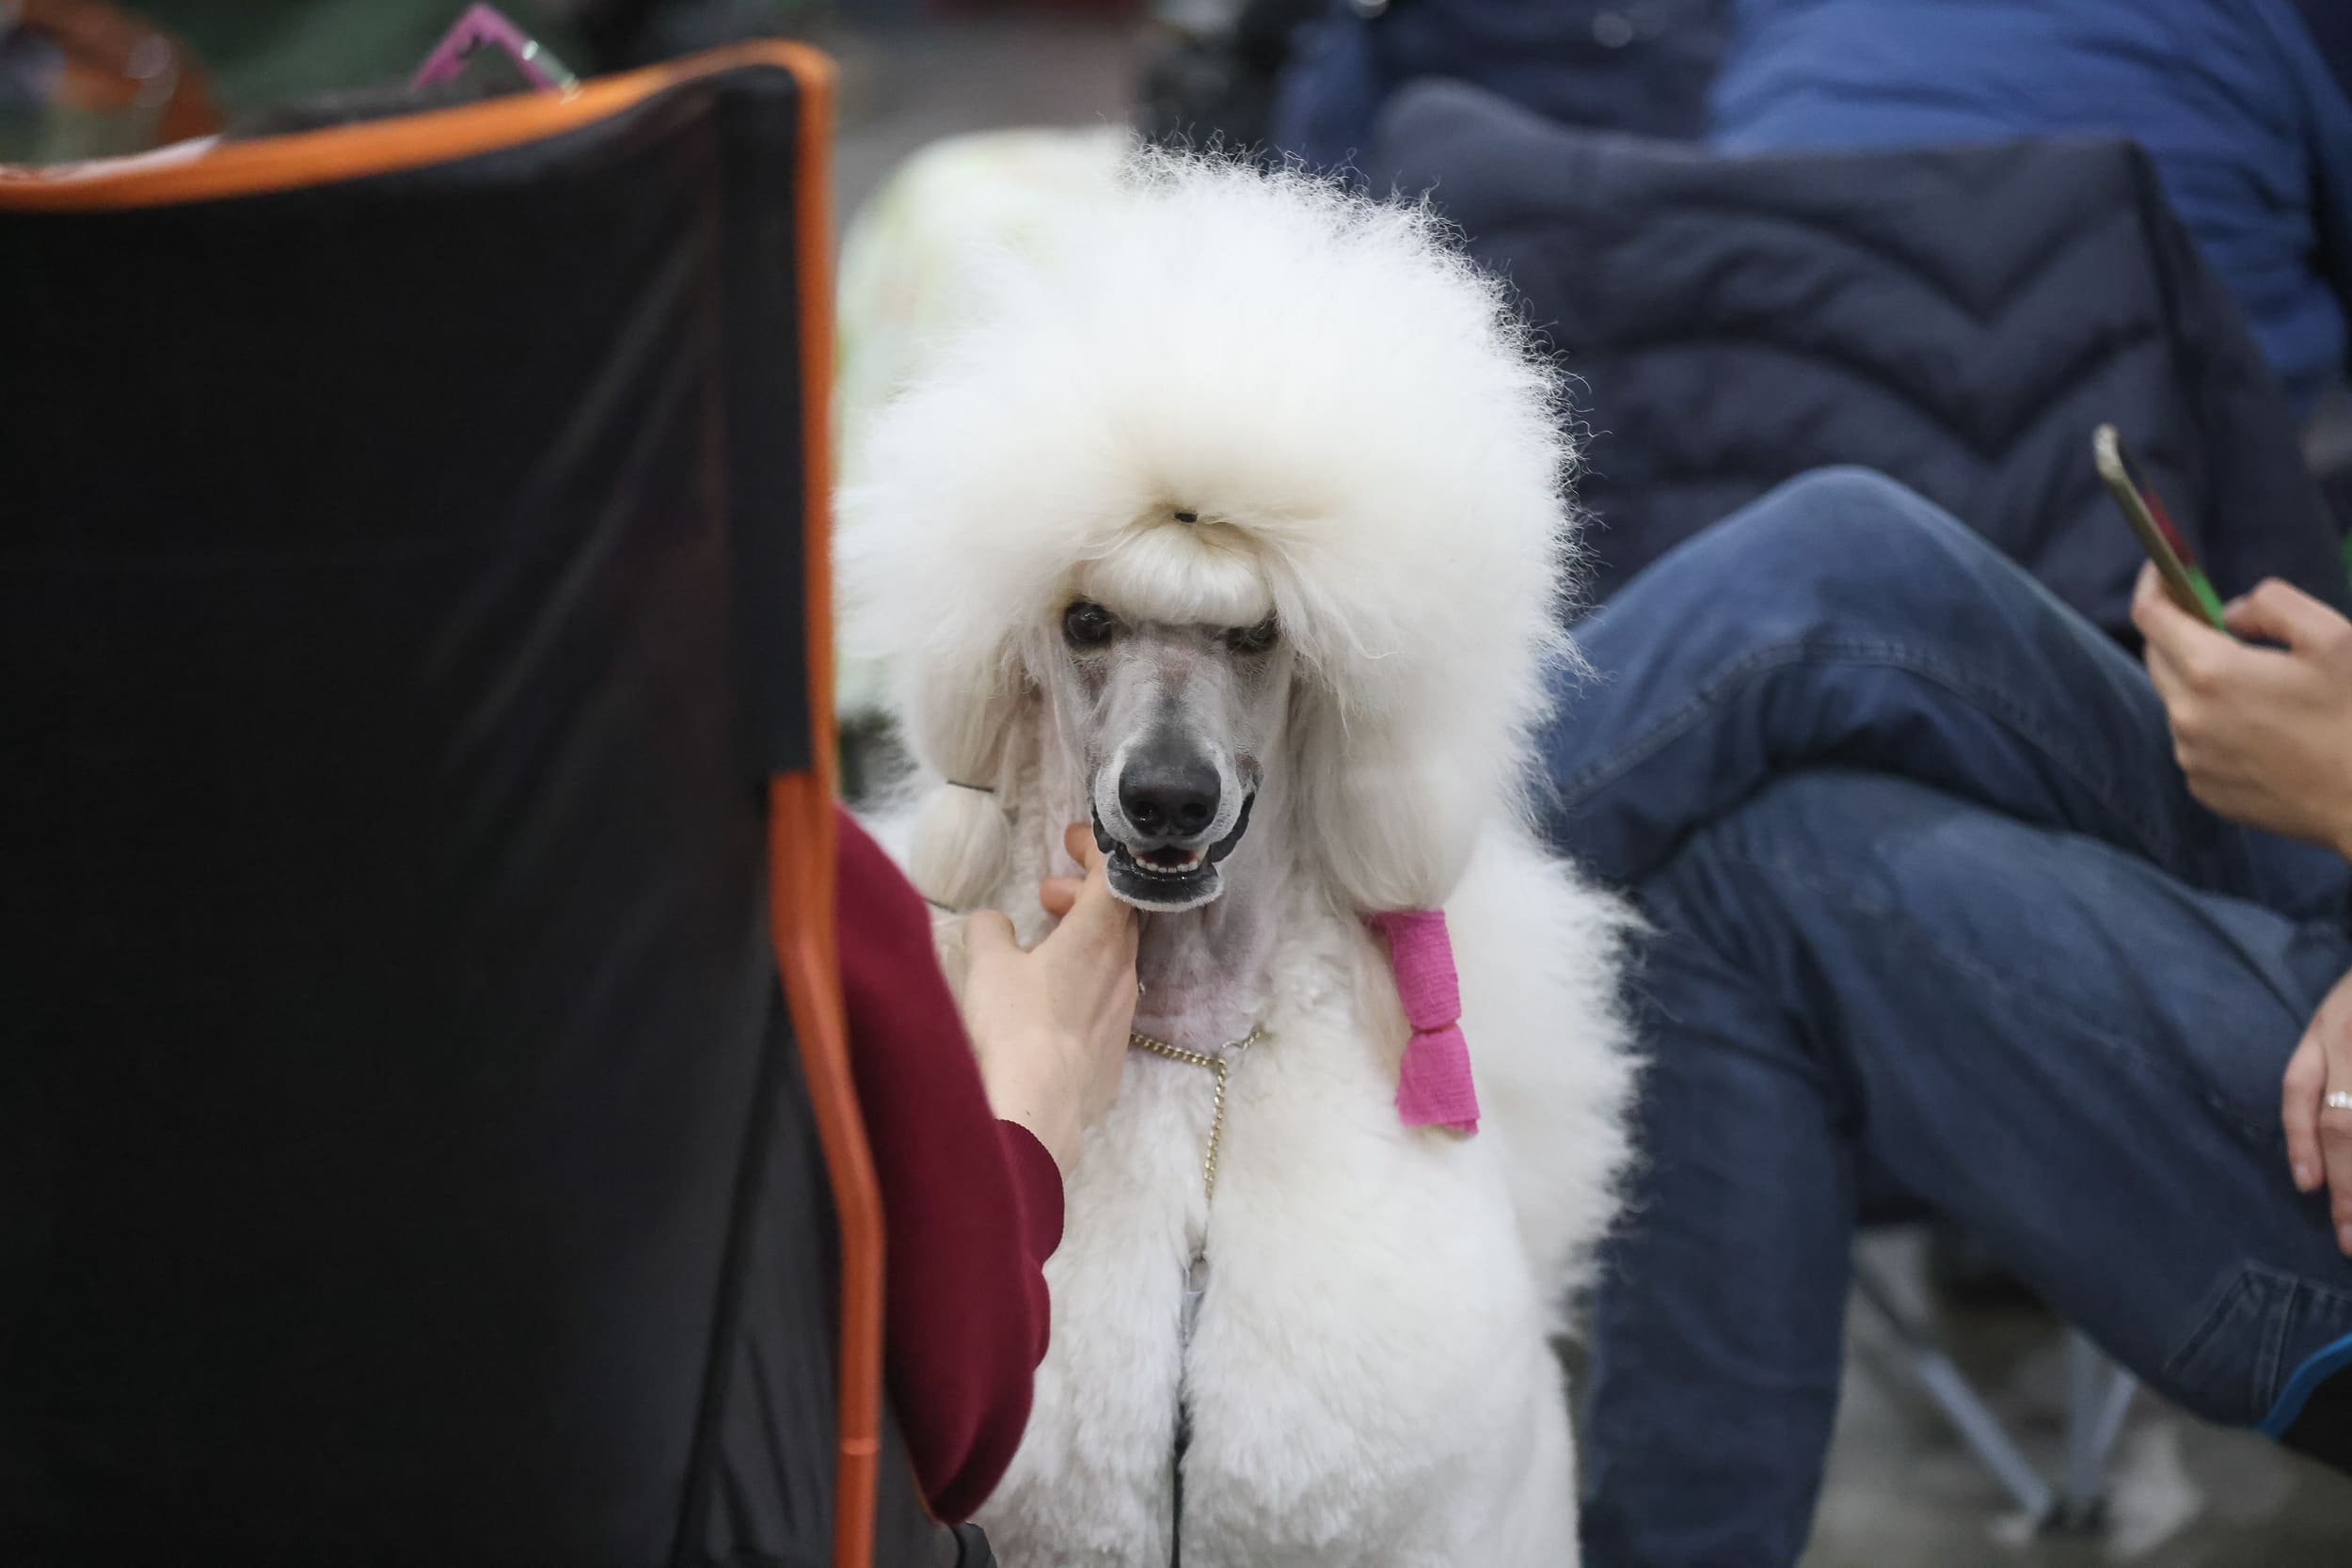 В Москве прошла выставка собак «Евразия 2023» 